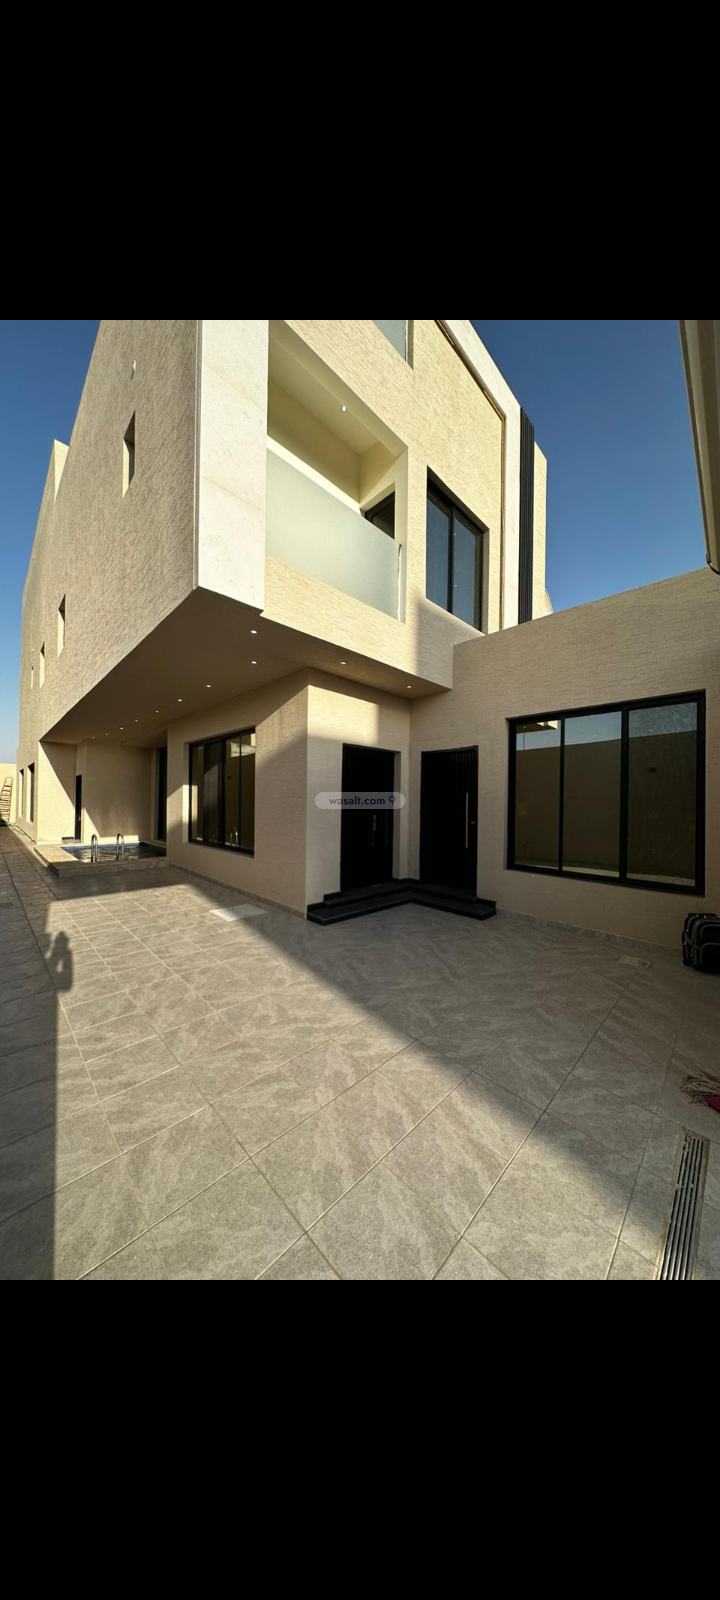 فيلا 390 متر مربع جنوبية غربية على شارع 20م العارض، شمال الرياض، الرياض